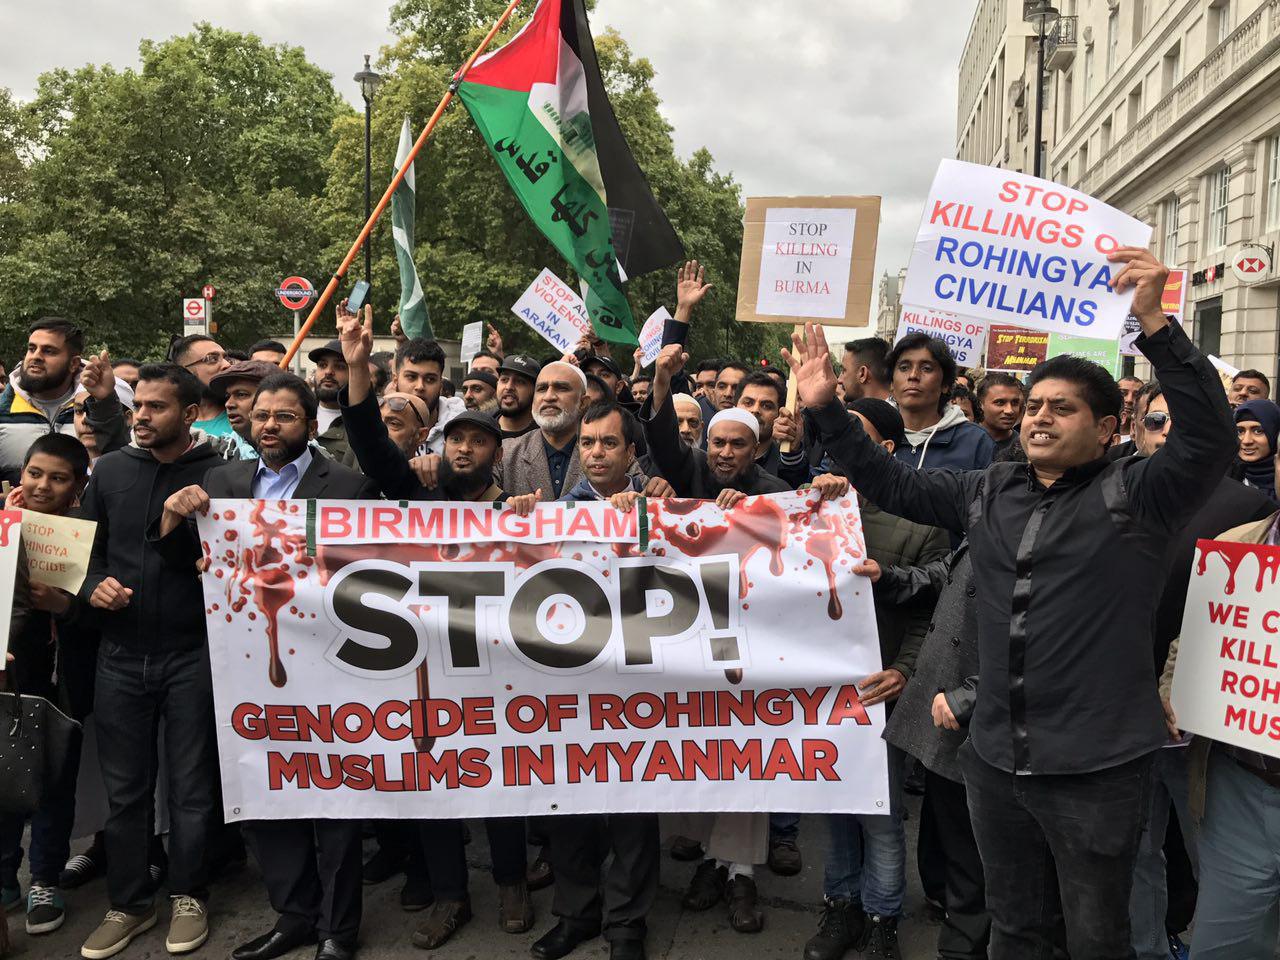  تظاهرات حاشدة في بريطانيا تنديداً بالمجازر ضد المسلمين في ميانمار